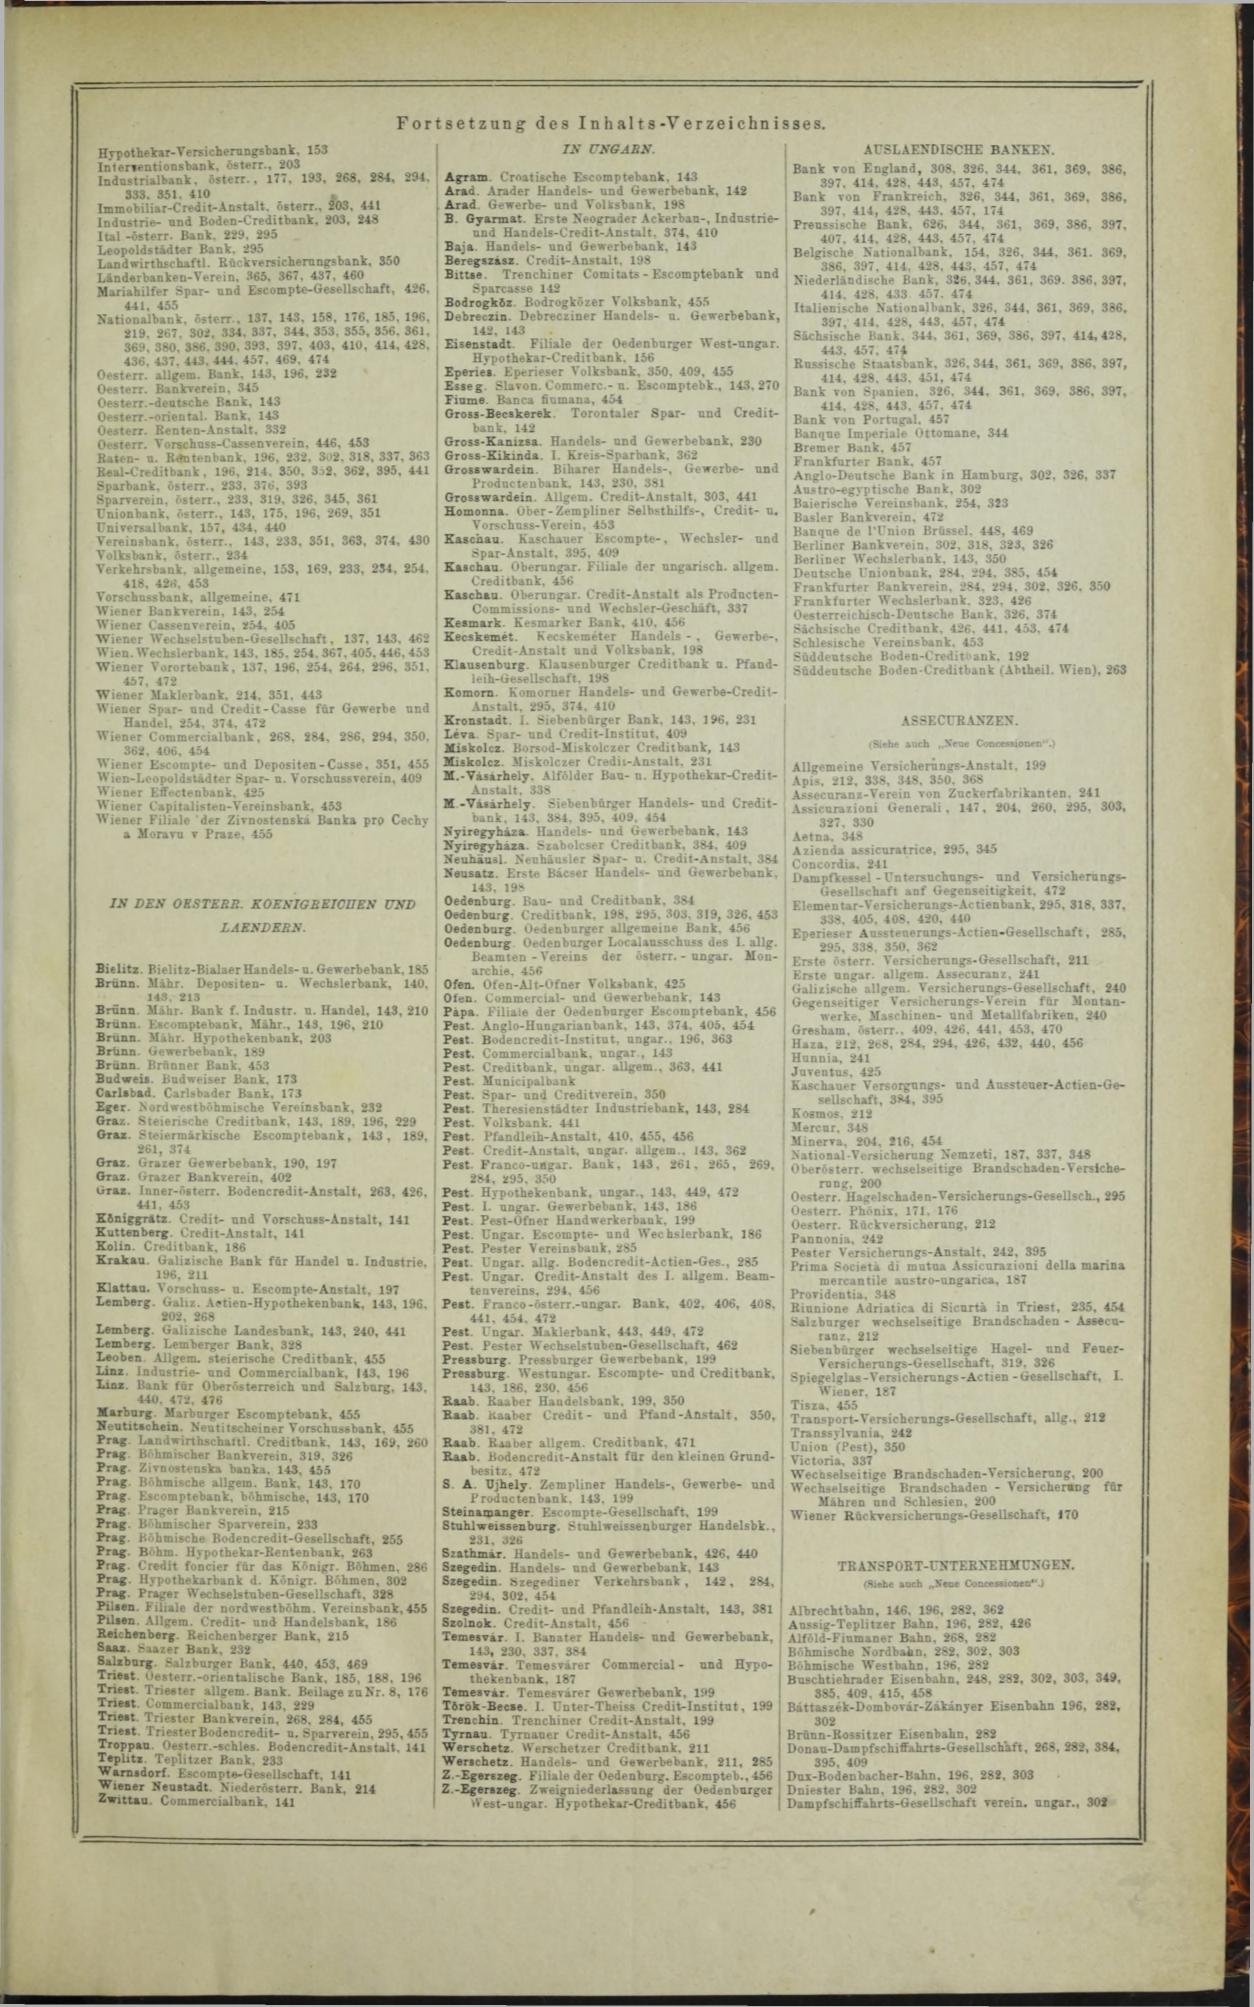 Der Tresor 16.10.1872 - Page 11